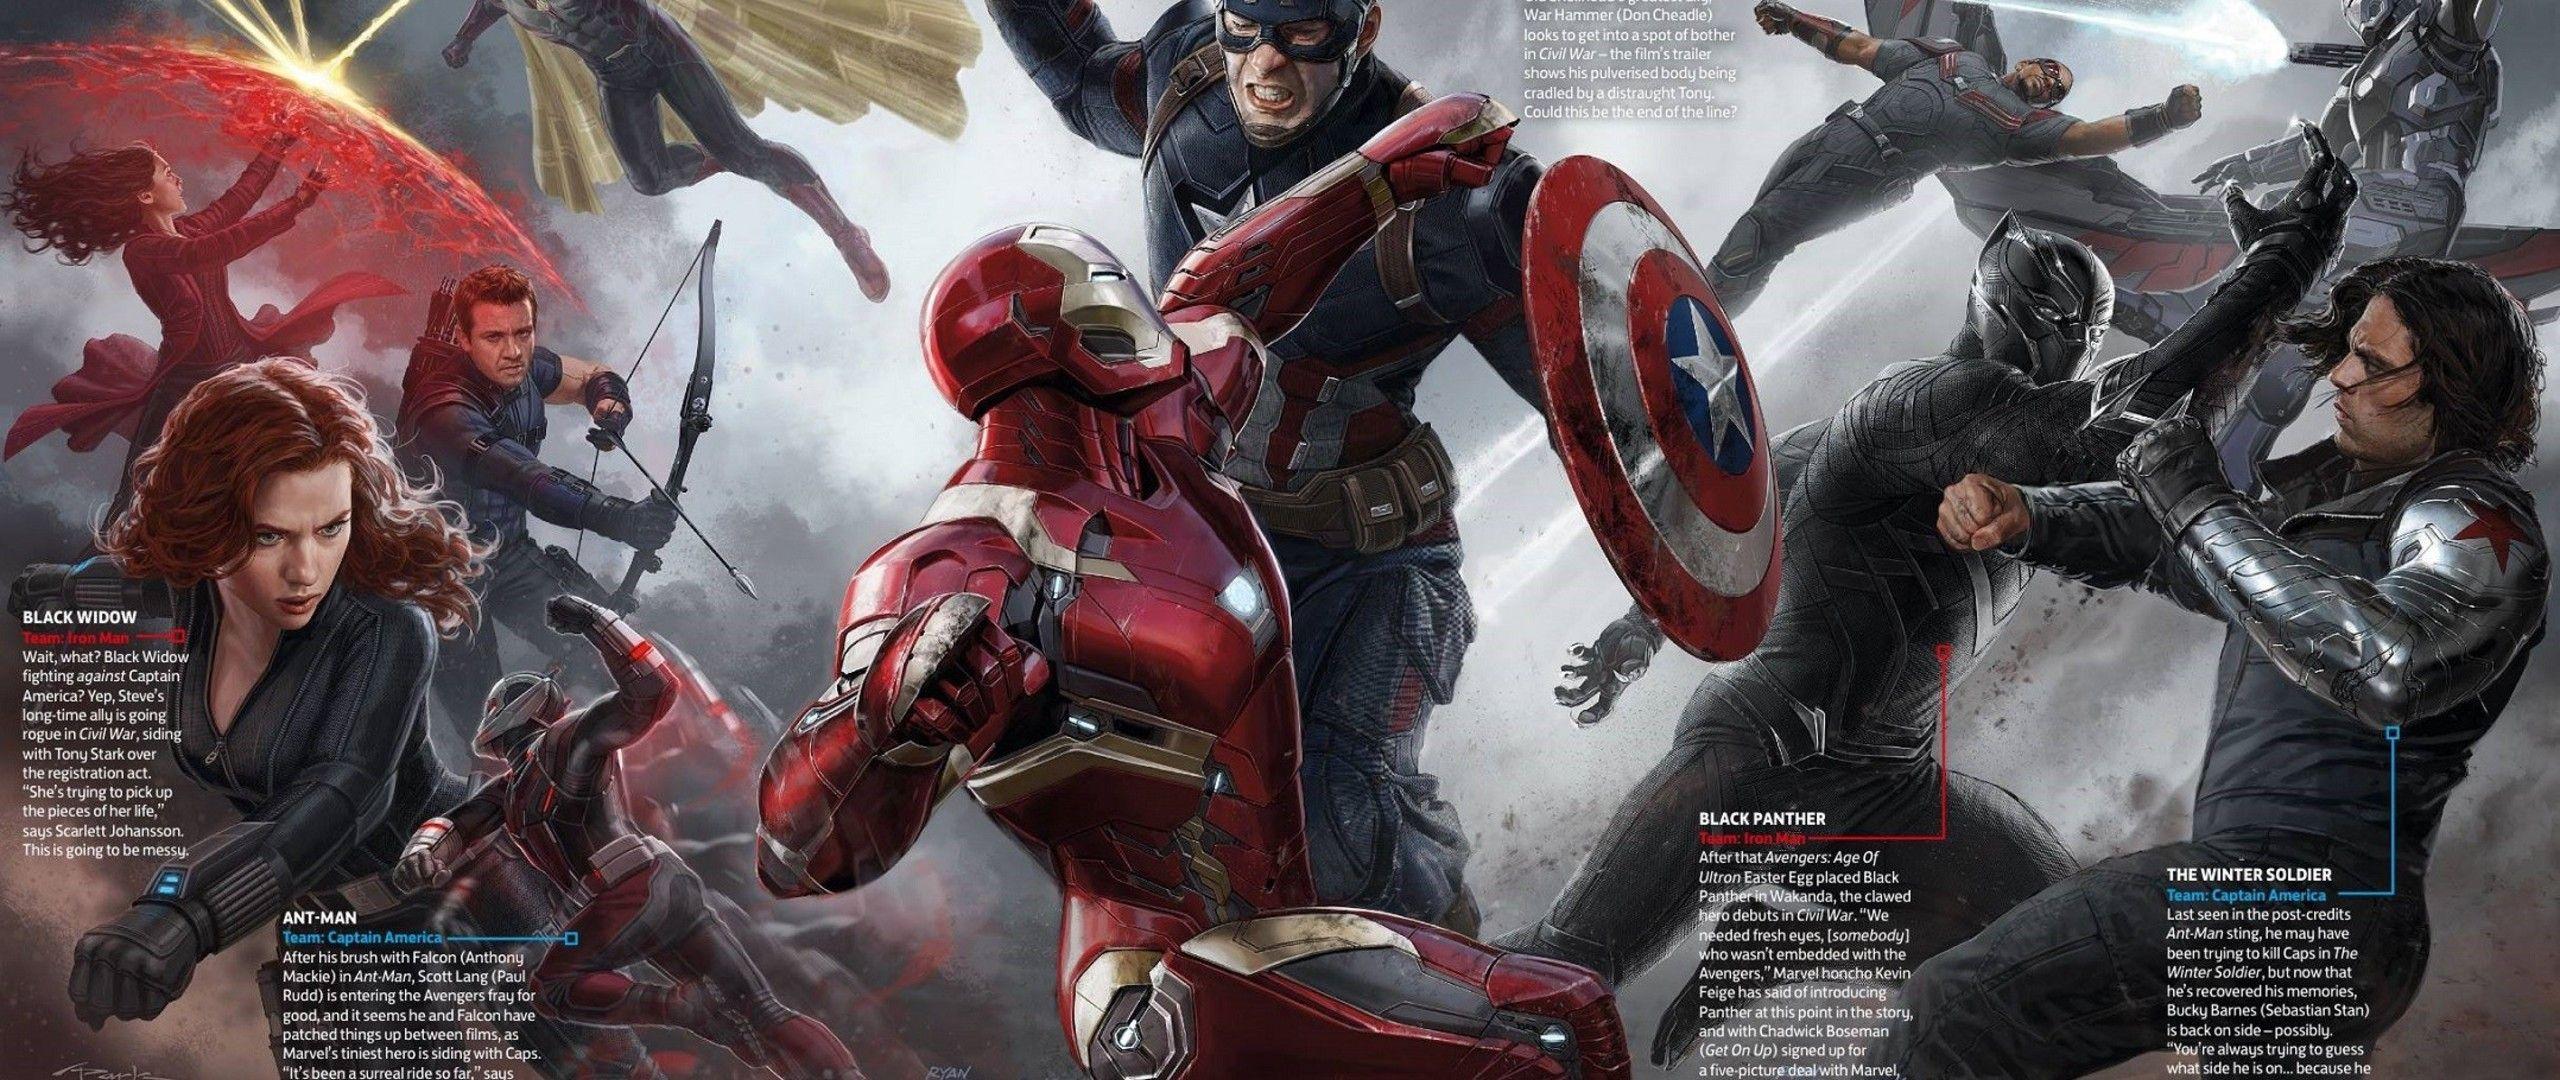 Avengers Endgame Captain America Mjolnir Hammer UHD 4K Wallpaper  Pixelzcc